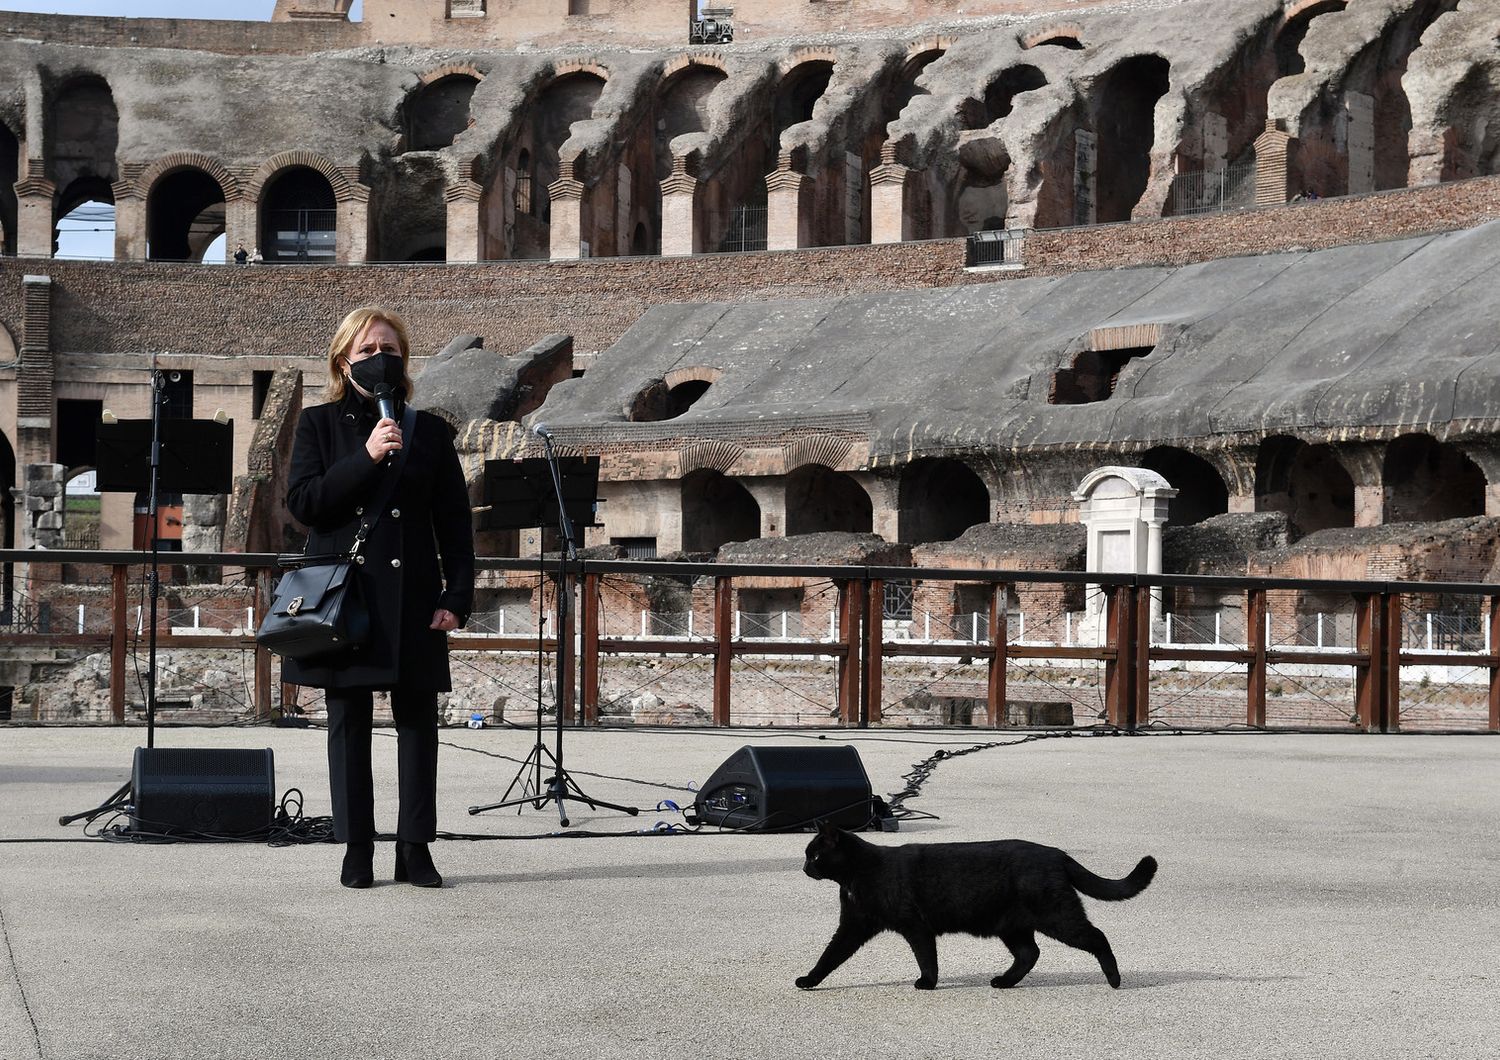 Il Parco Archeologico del Colosseo riapre al pubblico dopo il lockdown durato 87 giorni. Alfonsina Russo, direttrice del Parco Archeologico del Colosseo&nbsp;